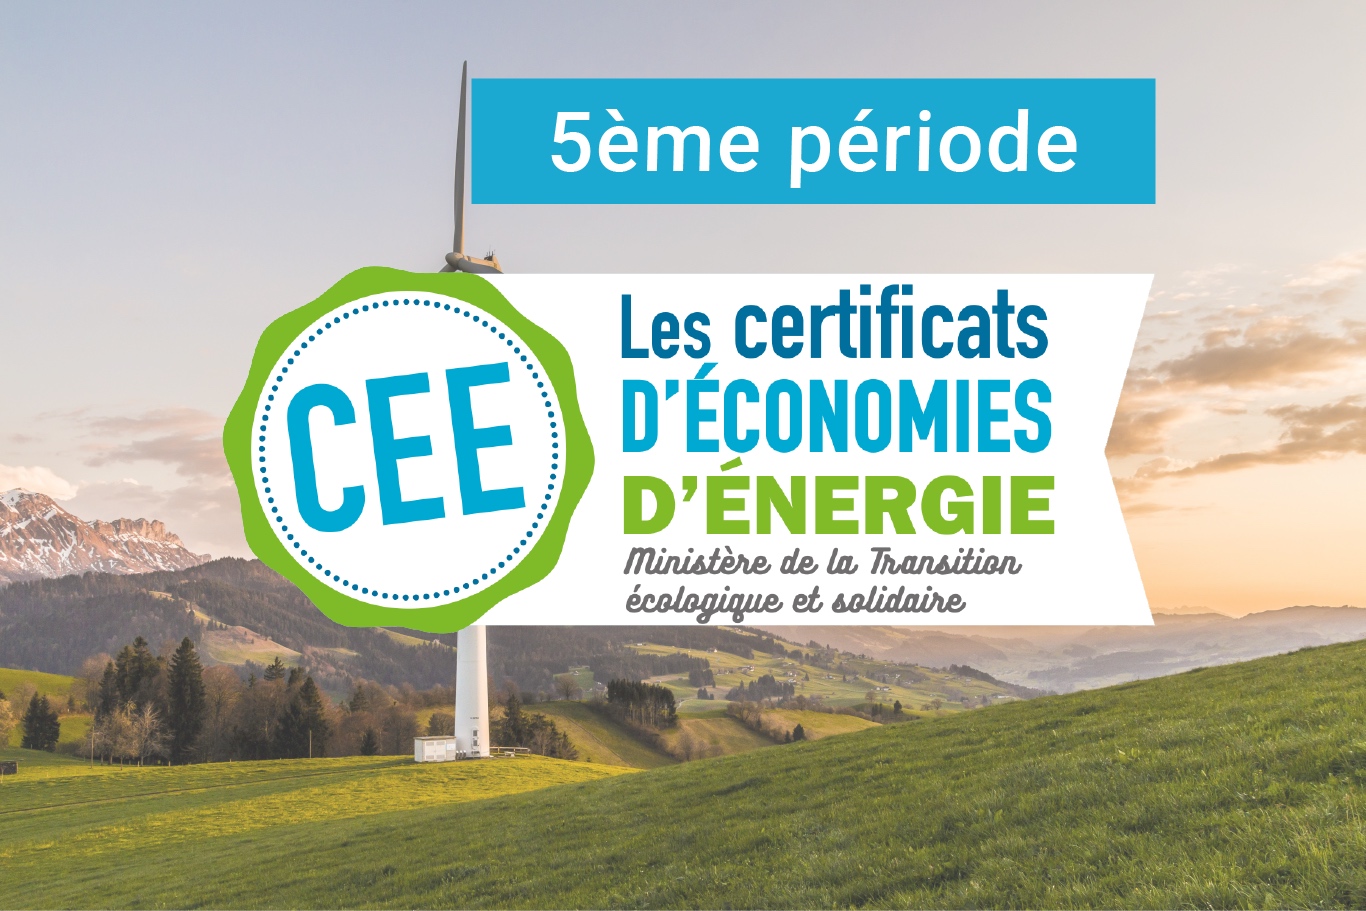 La 5ème période du dispositif des Certificats d’Économies d’Énergie (CEE)